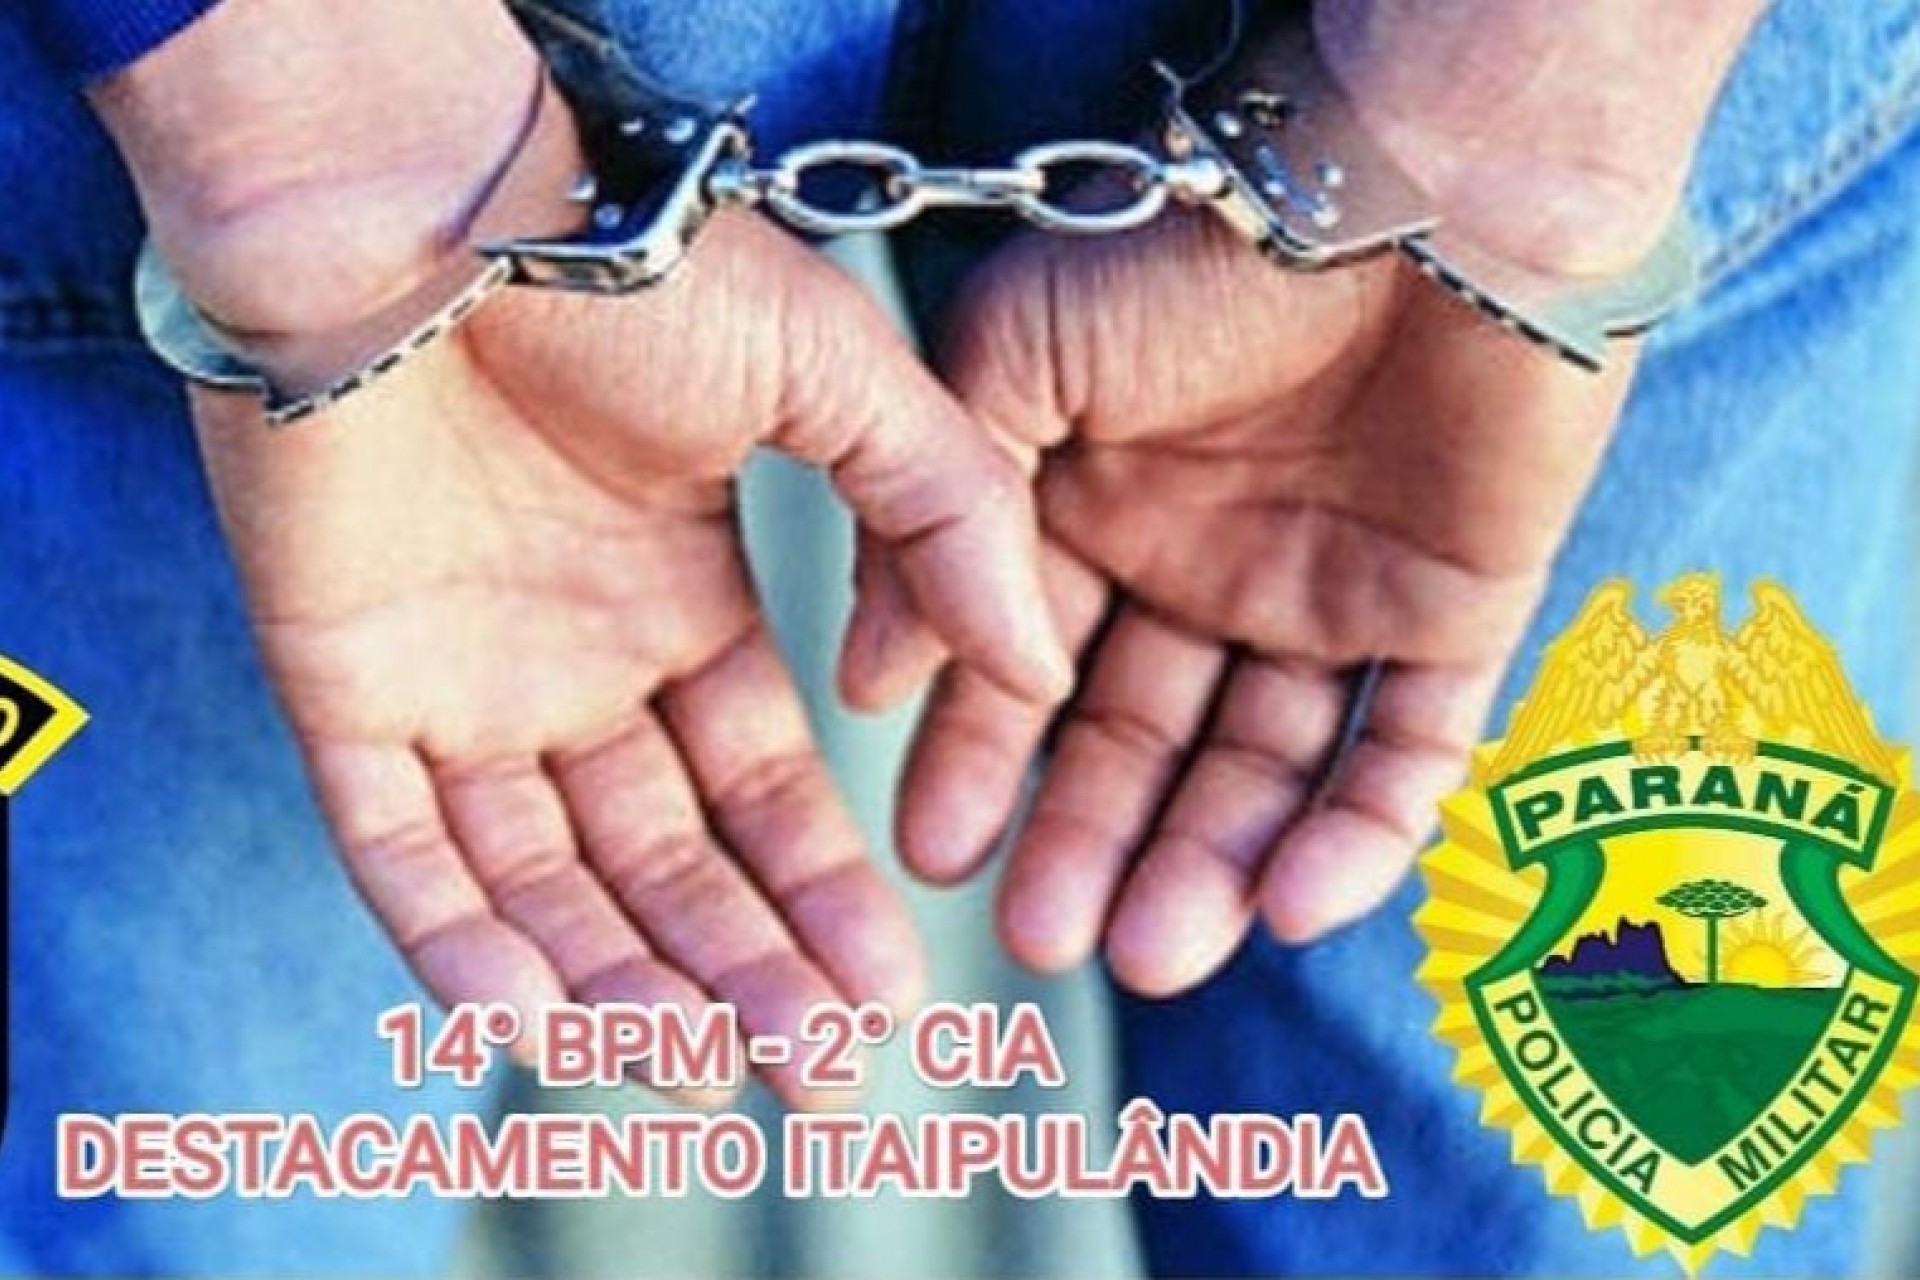 Polícia Militar de Itaipulândia cumpre mandado de prisão